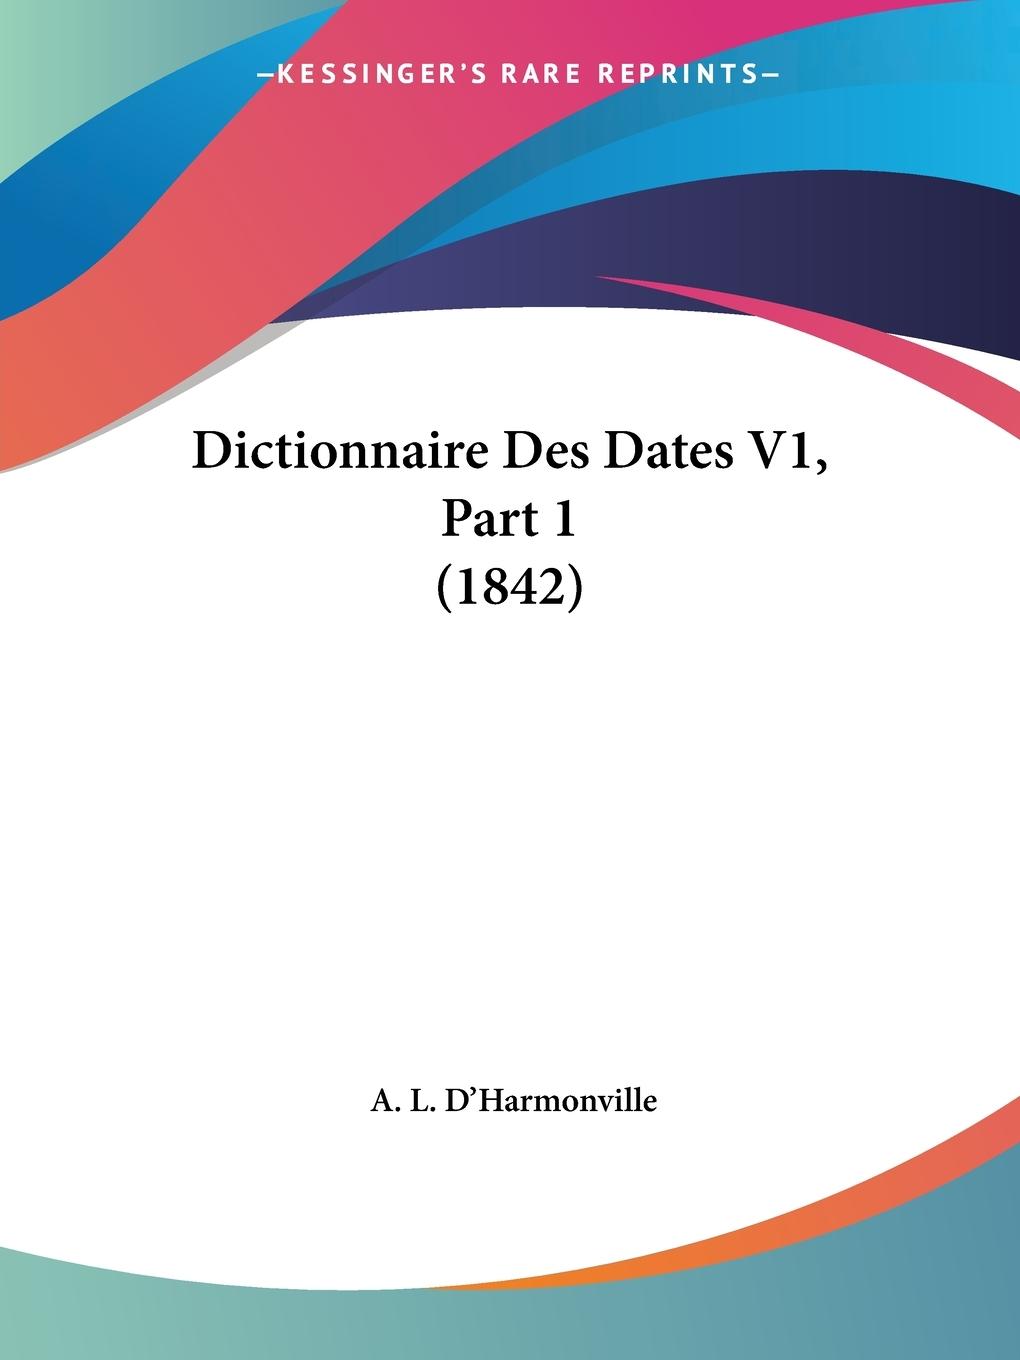 Dictionnaire Des Dates V1, Part 1 (1842) - D Harmonville, A. L.